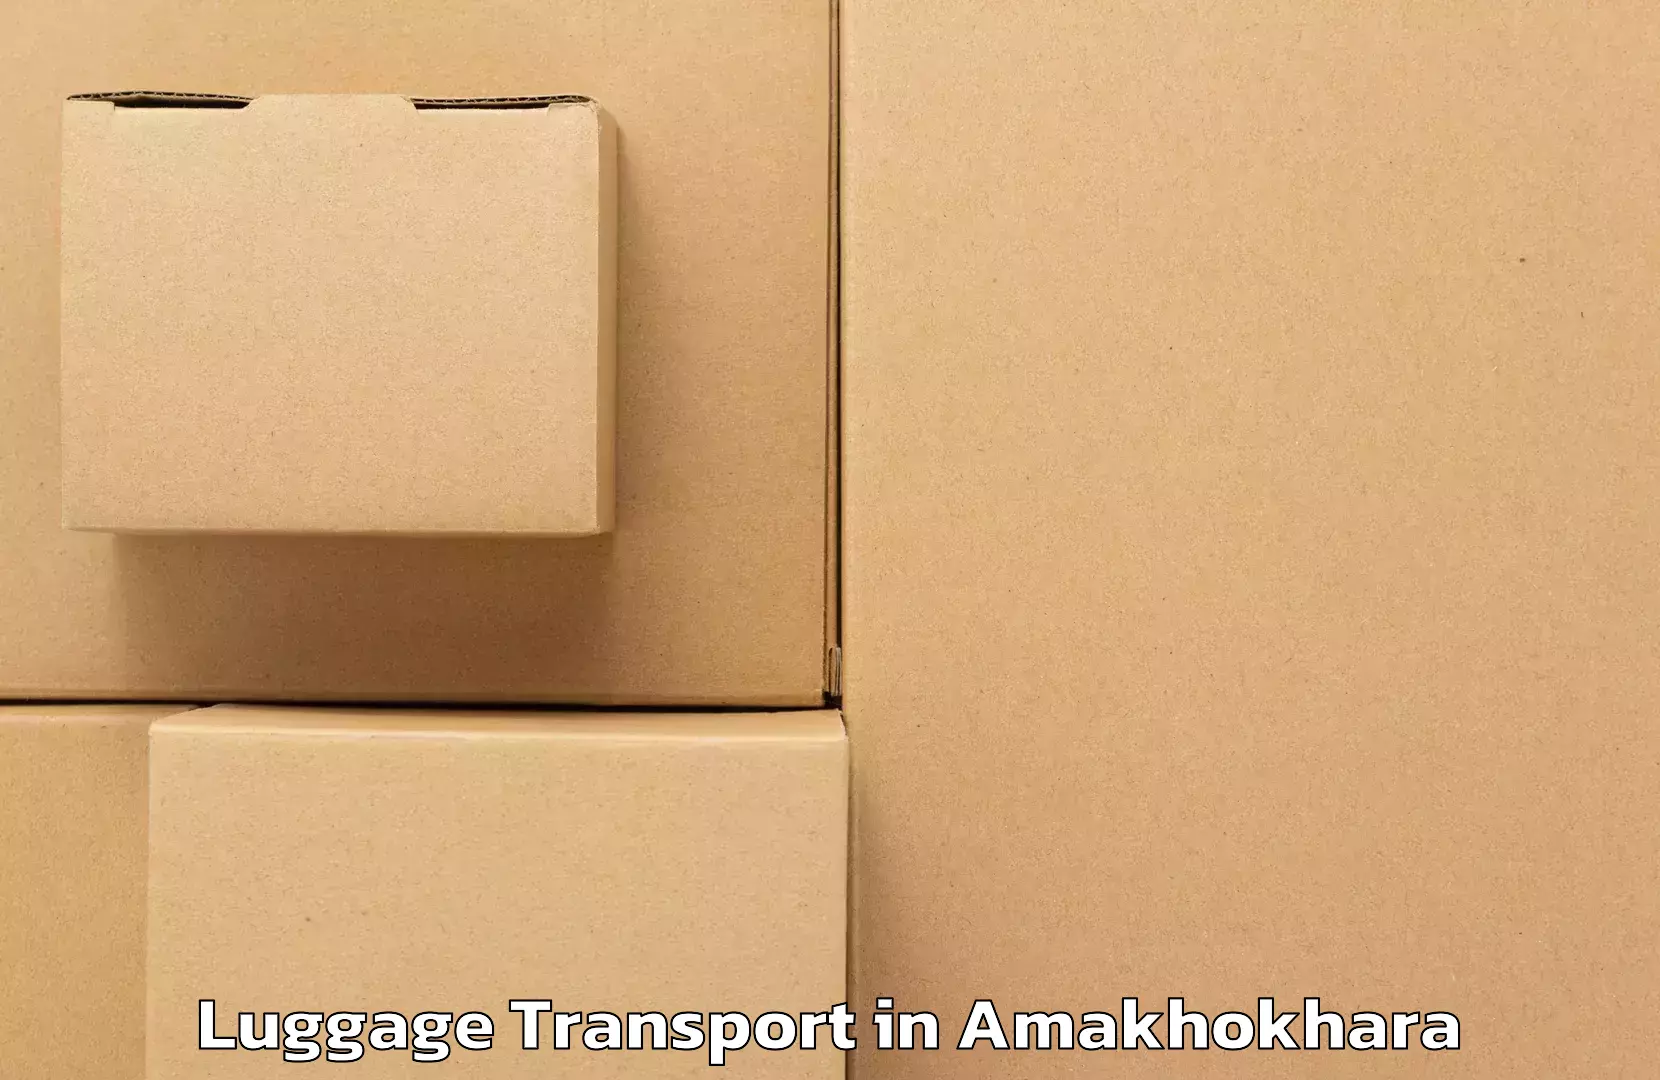 Holiday season luggage delivery in Amakhokhara